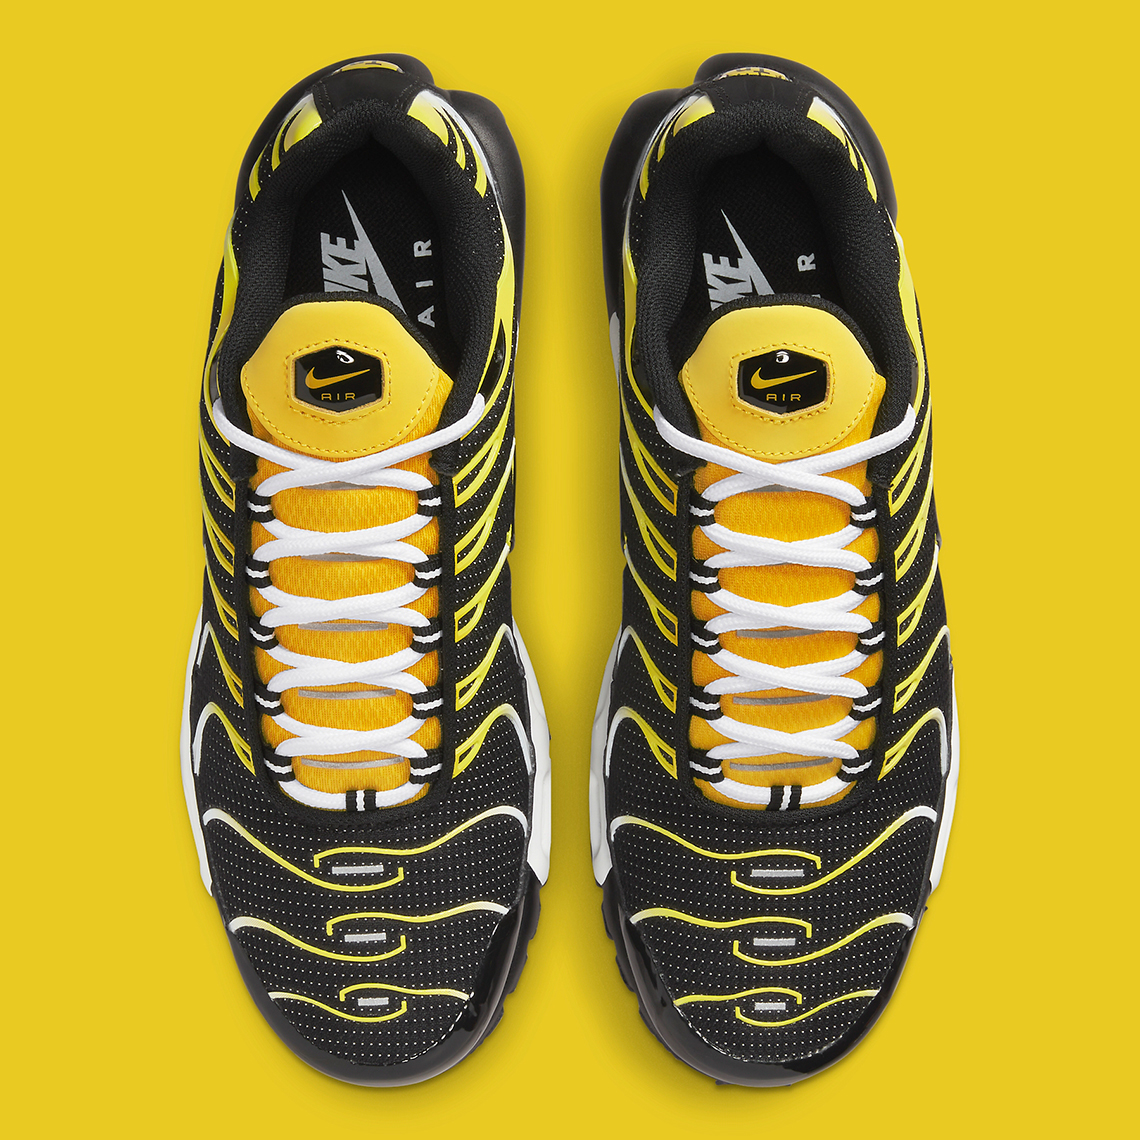 Nike Air Max Plus Black Yellow | SneakerNews.com